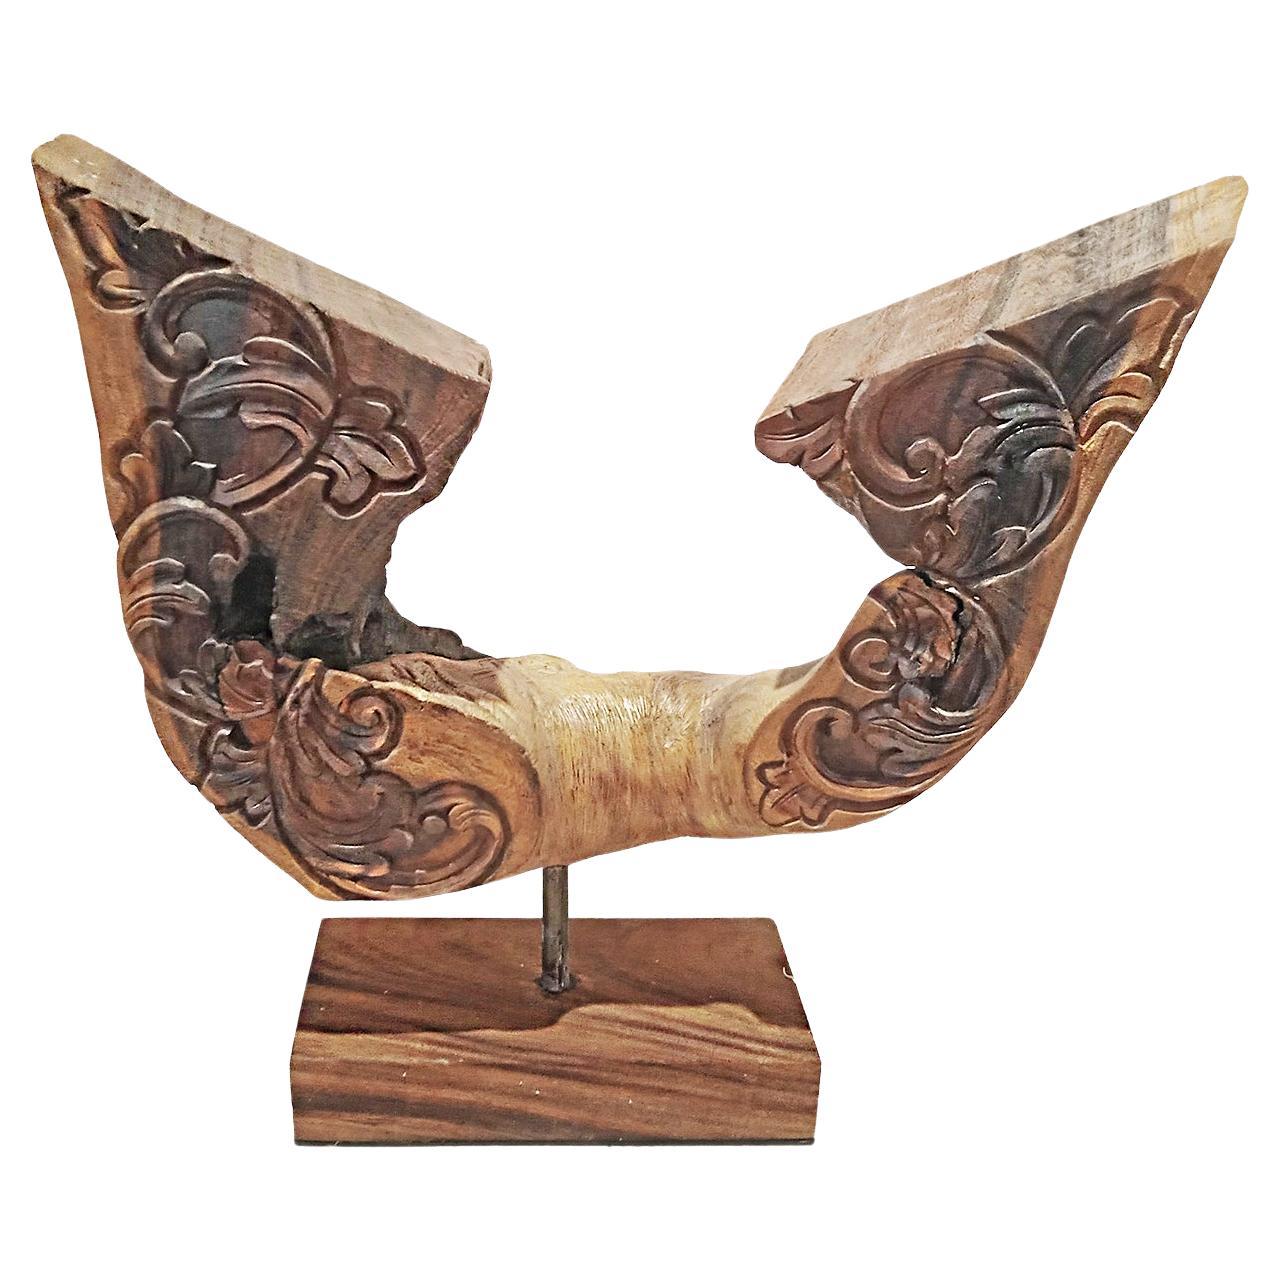 Indonesische Skulptur aus Altholz, Flügelform, Indonesien